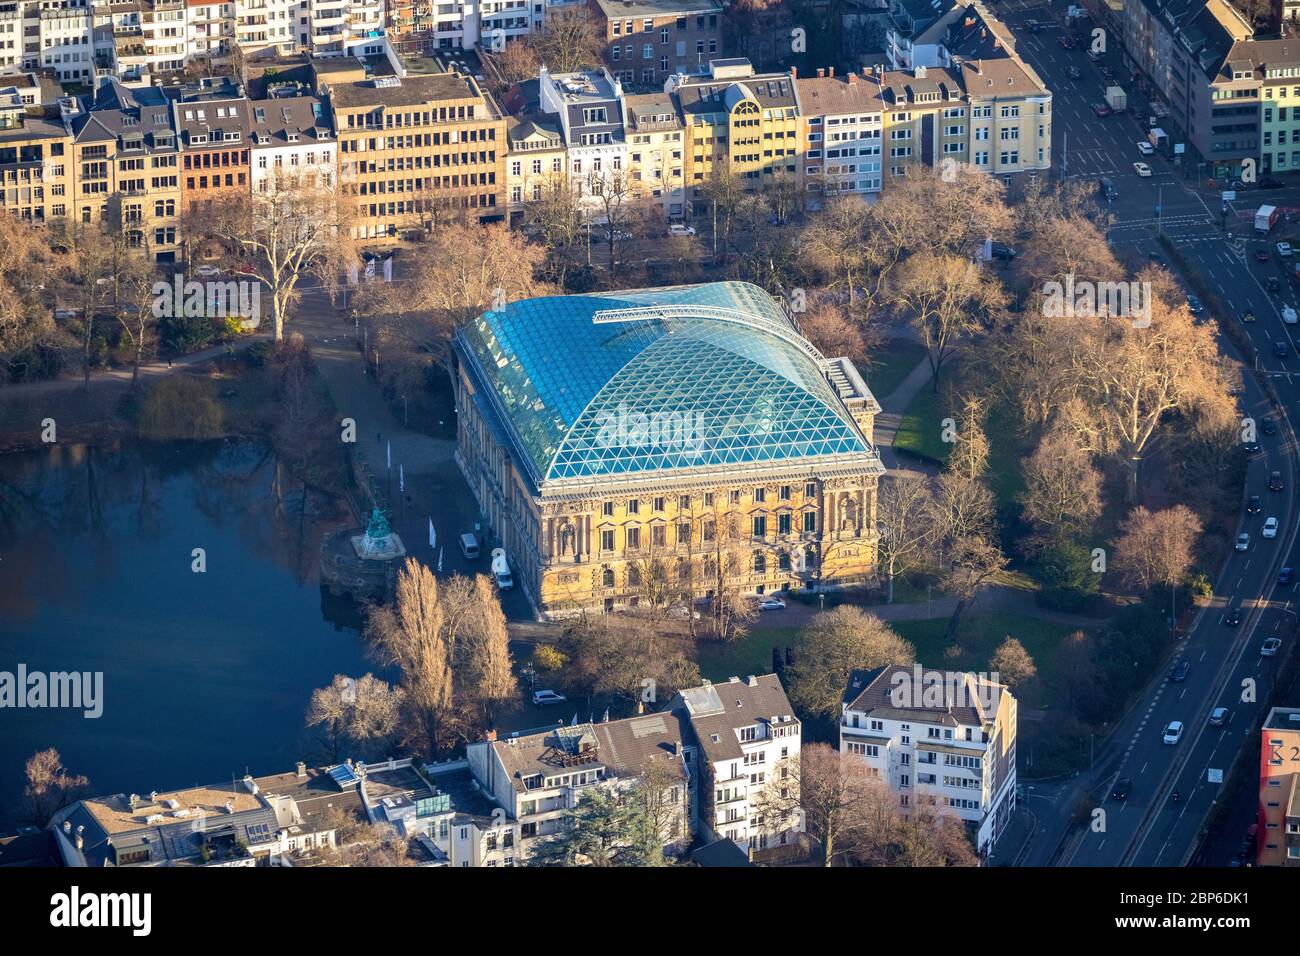 Aerial view, Ständehaus exhibition building, Ständehauspark, Kaiserteich, Dusseldorf, Rhineland, North Rhine-Westphalia, Germany Stock Photo